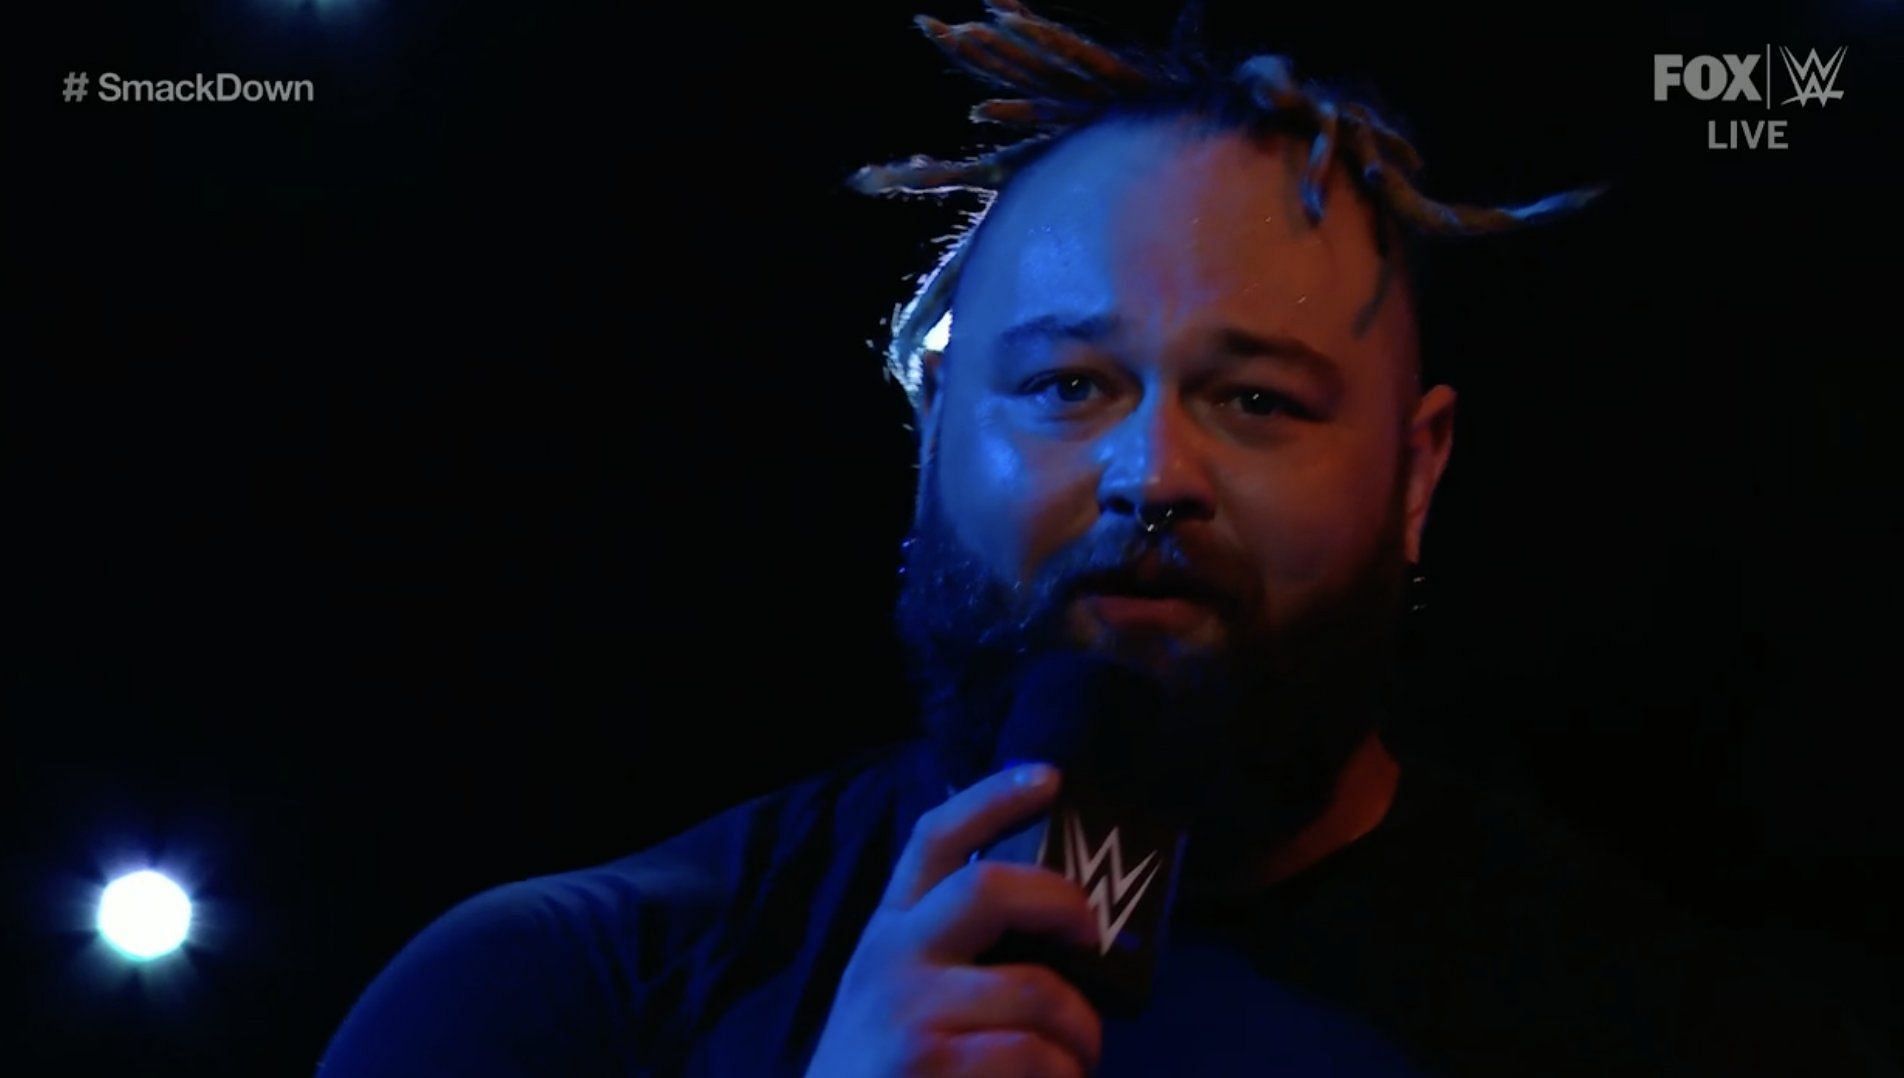 WWE SmackDown saw an emotional side of Bray Wyatt